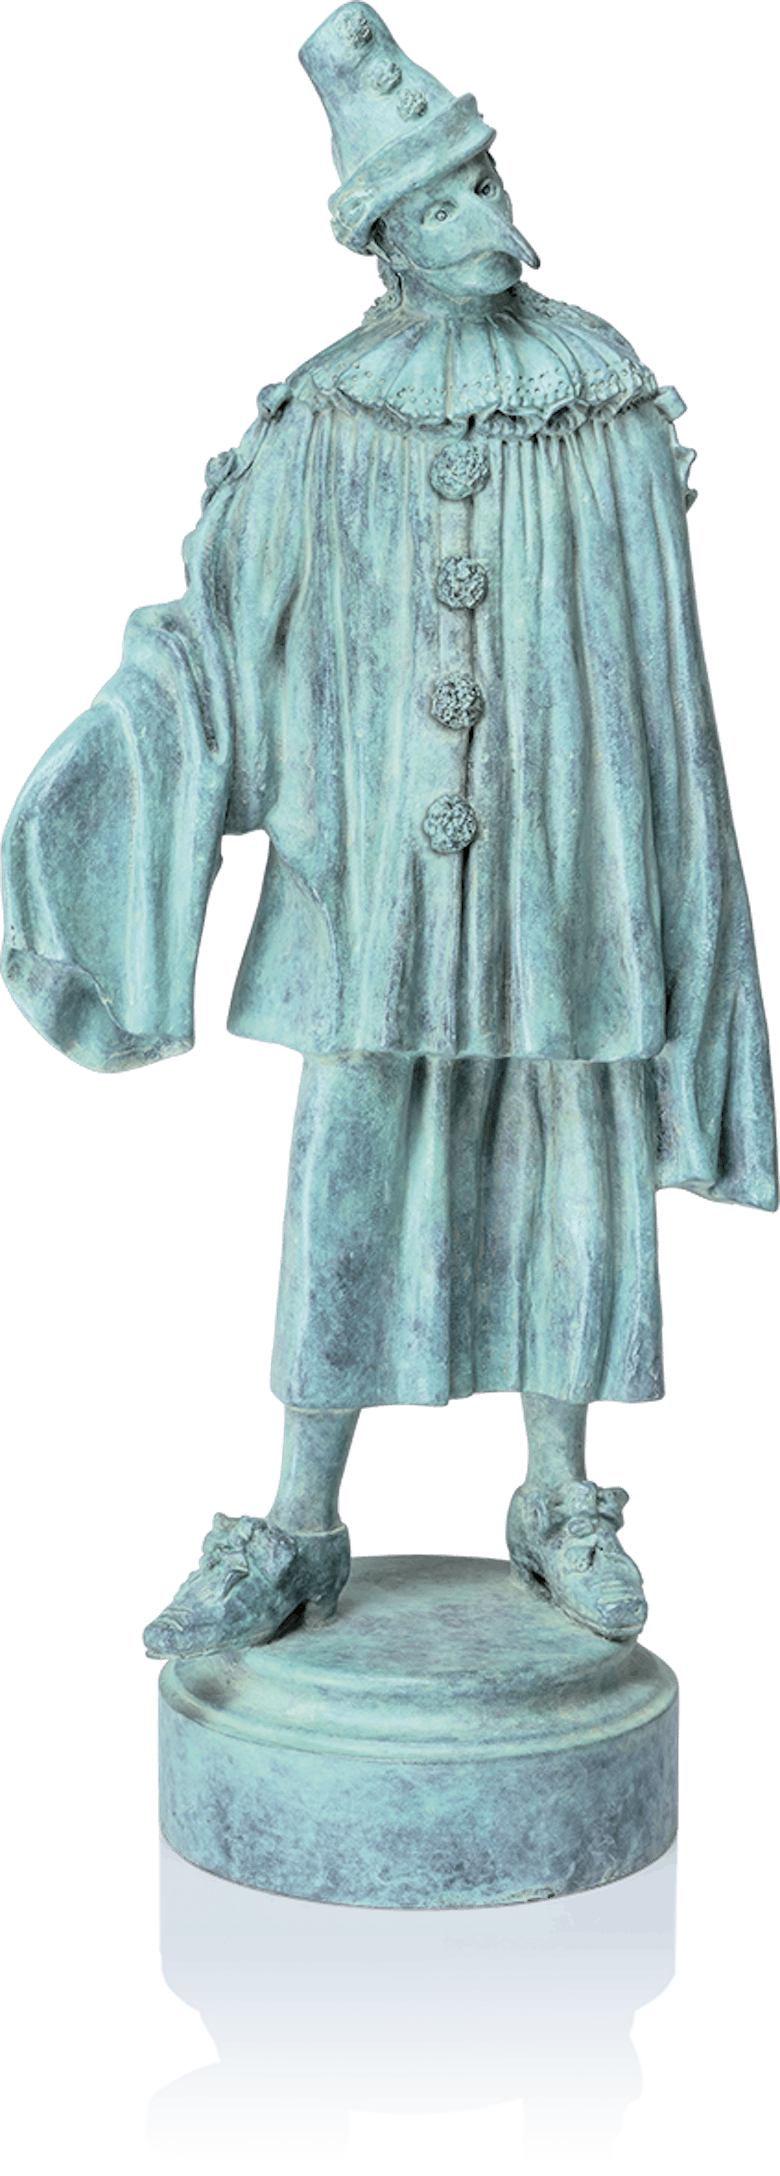 Bronzefigur Der Ästhet von Thomas Schöne